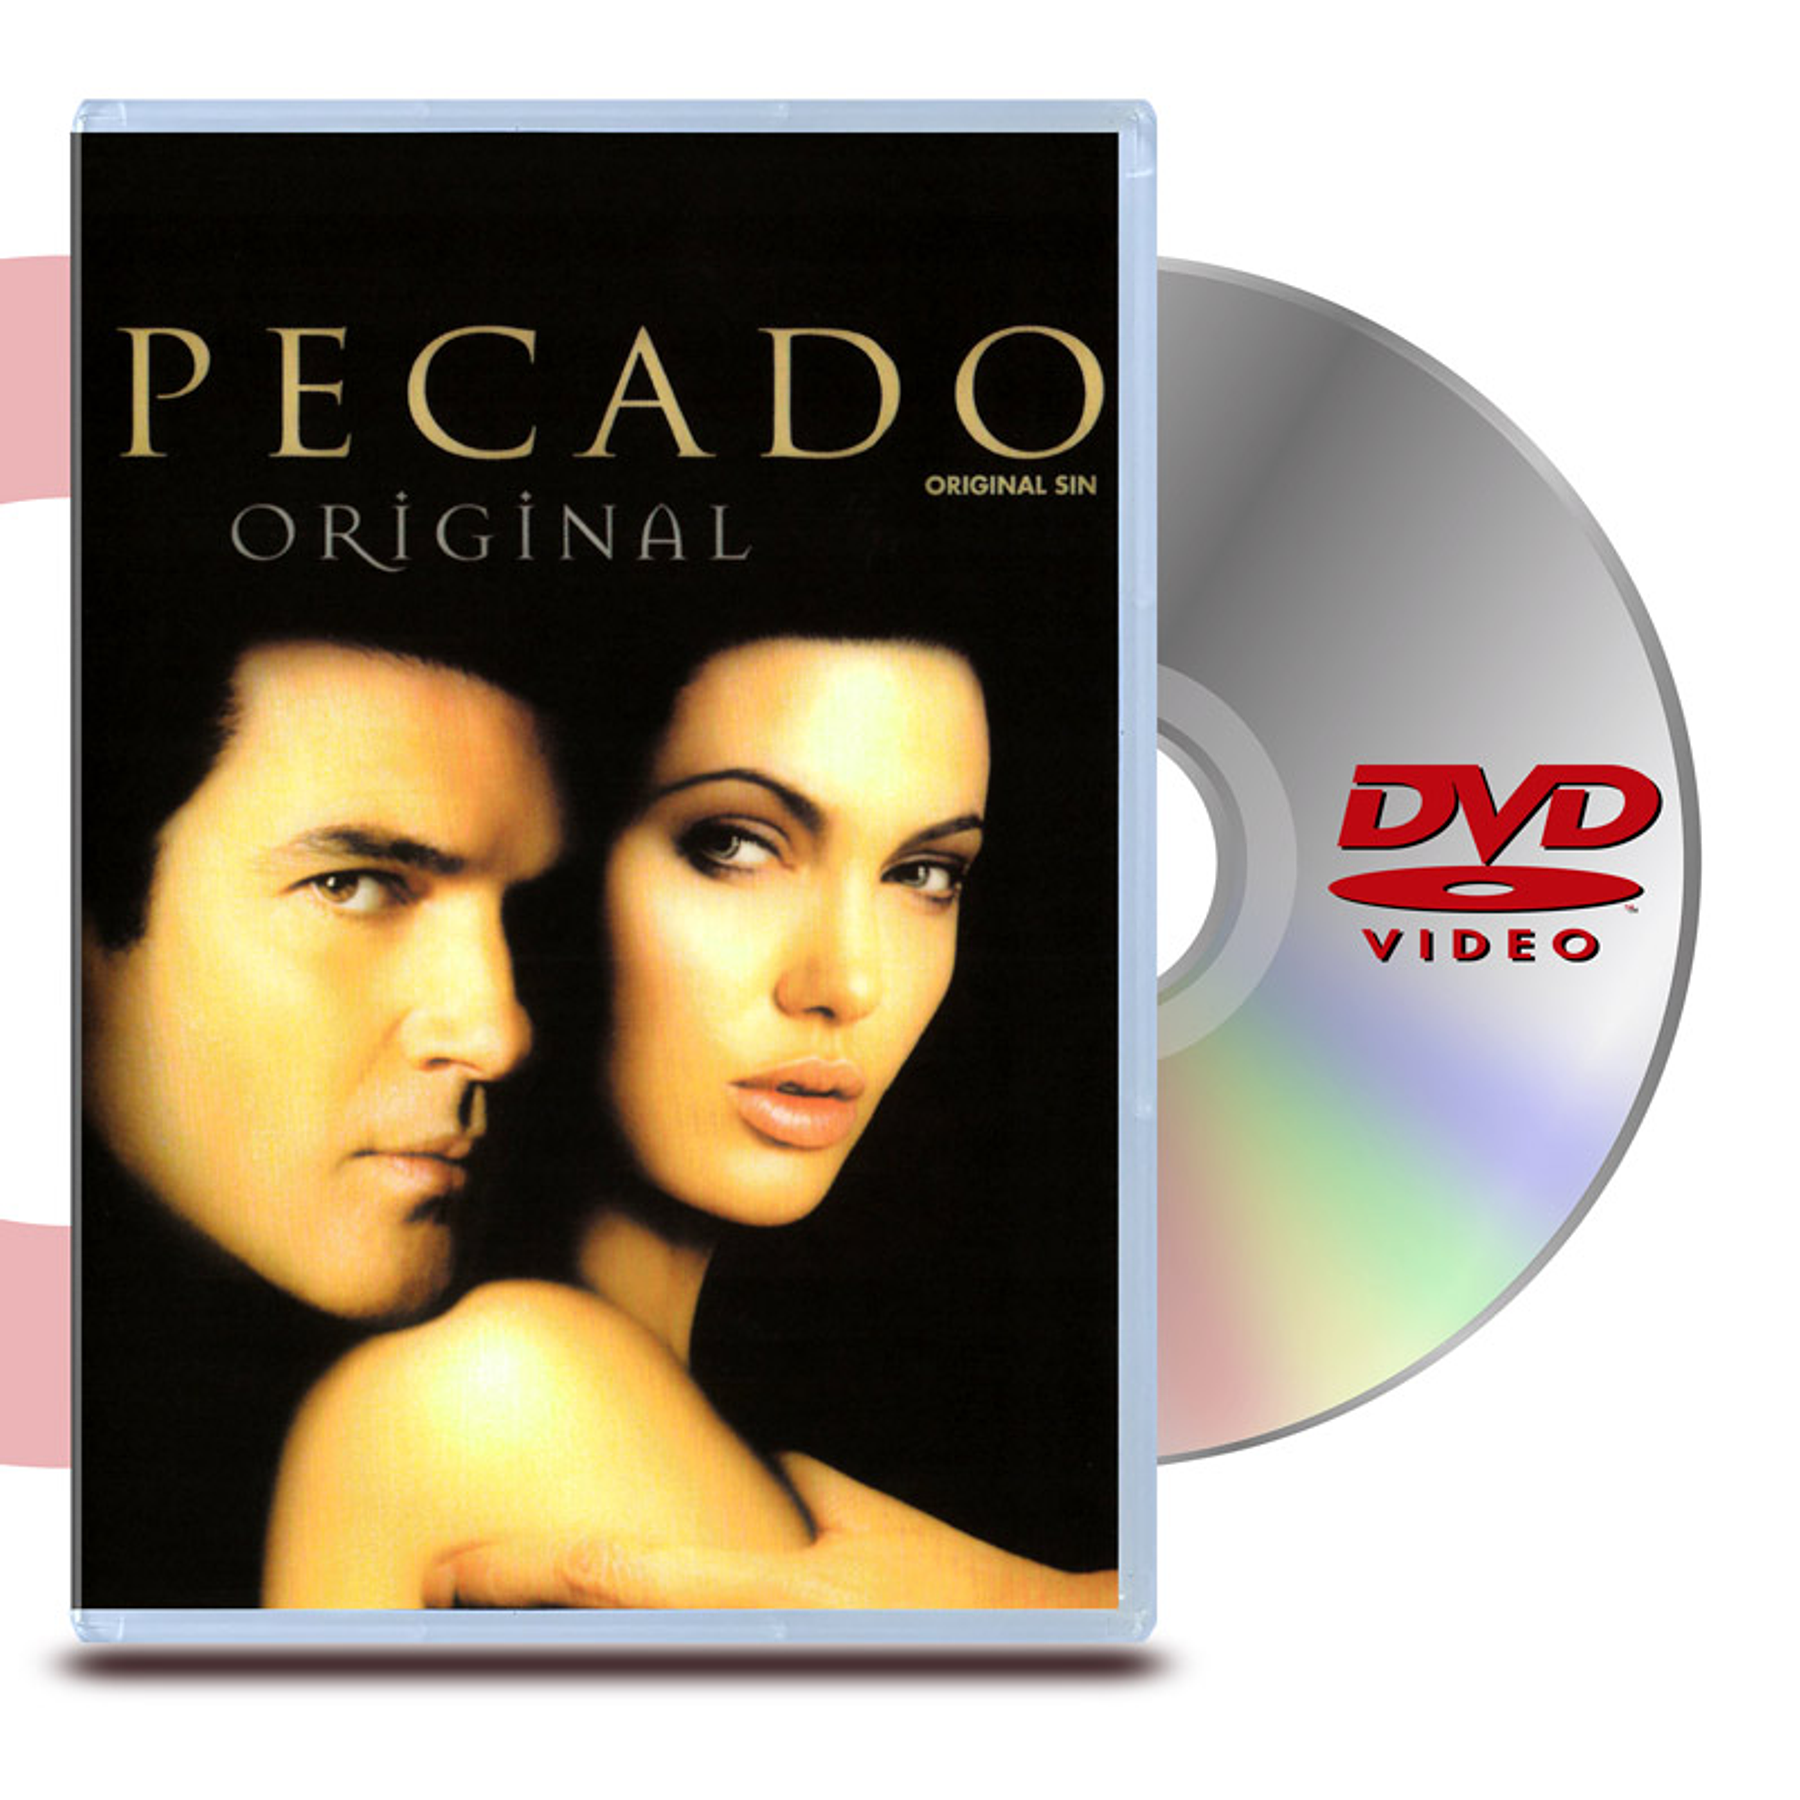 DVD PECADO ORIGINAL